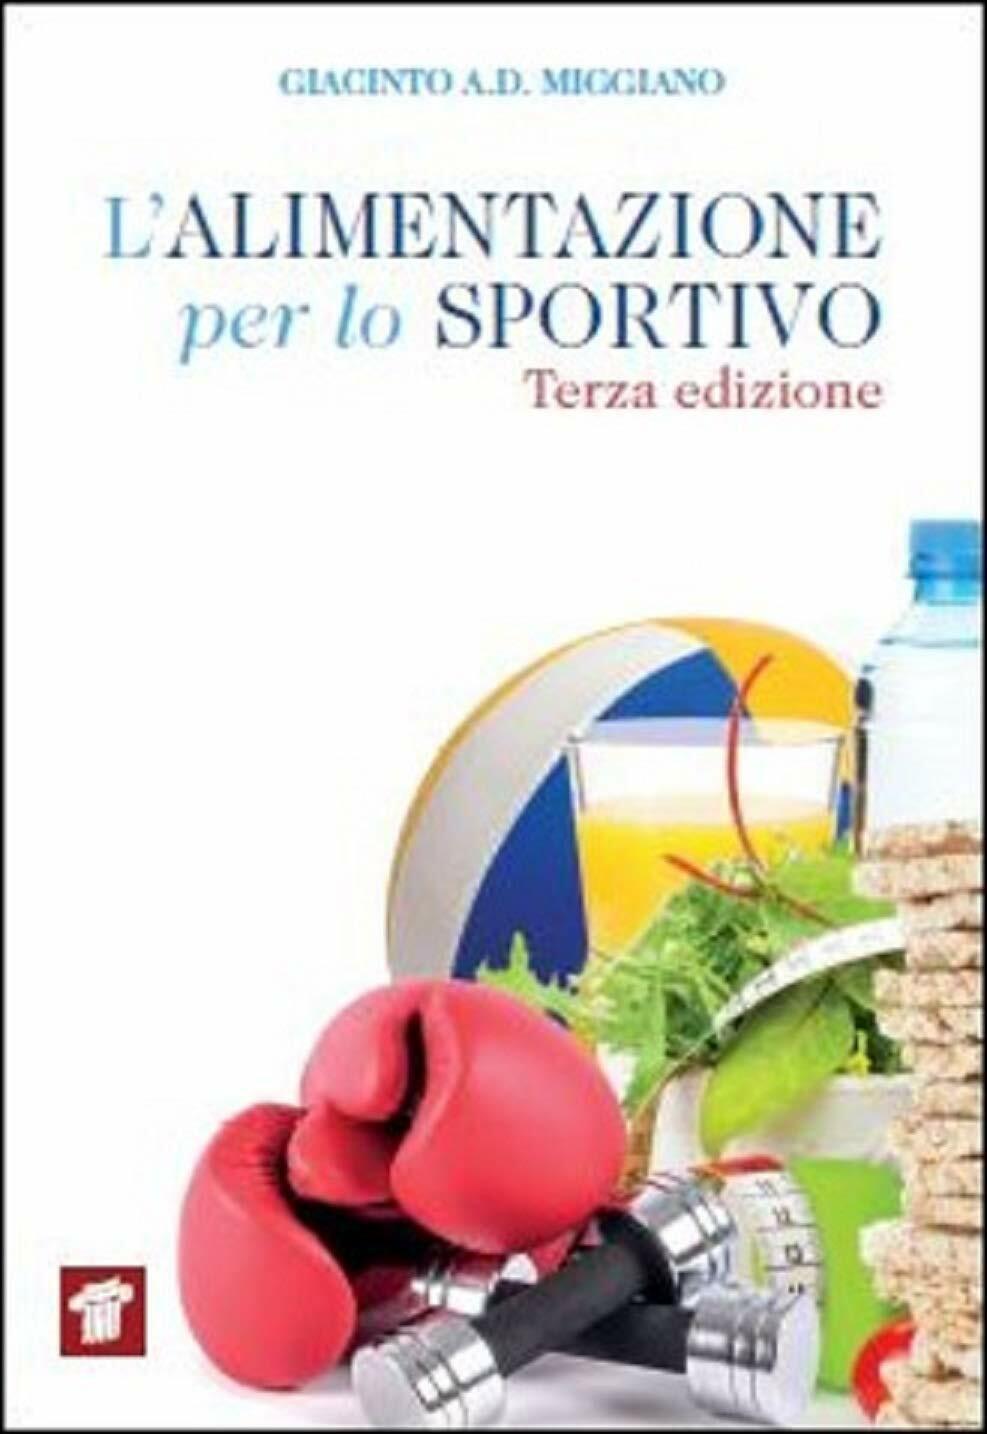 L'alimentazione per lo sportivo - Giacinto Abele Donato Miggiano - 2020 libro usato